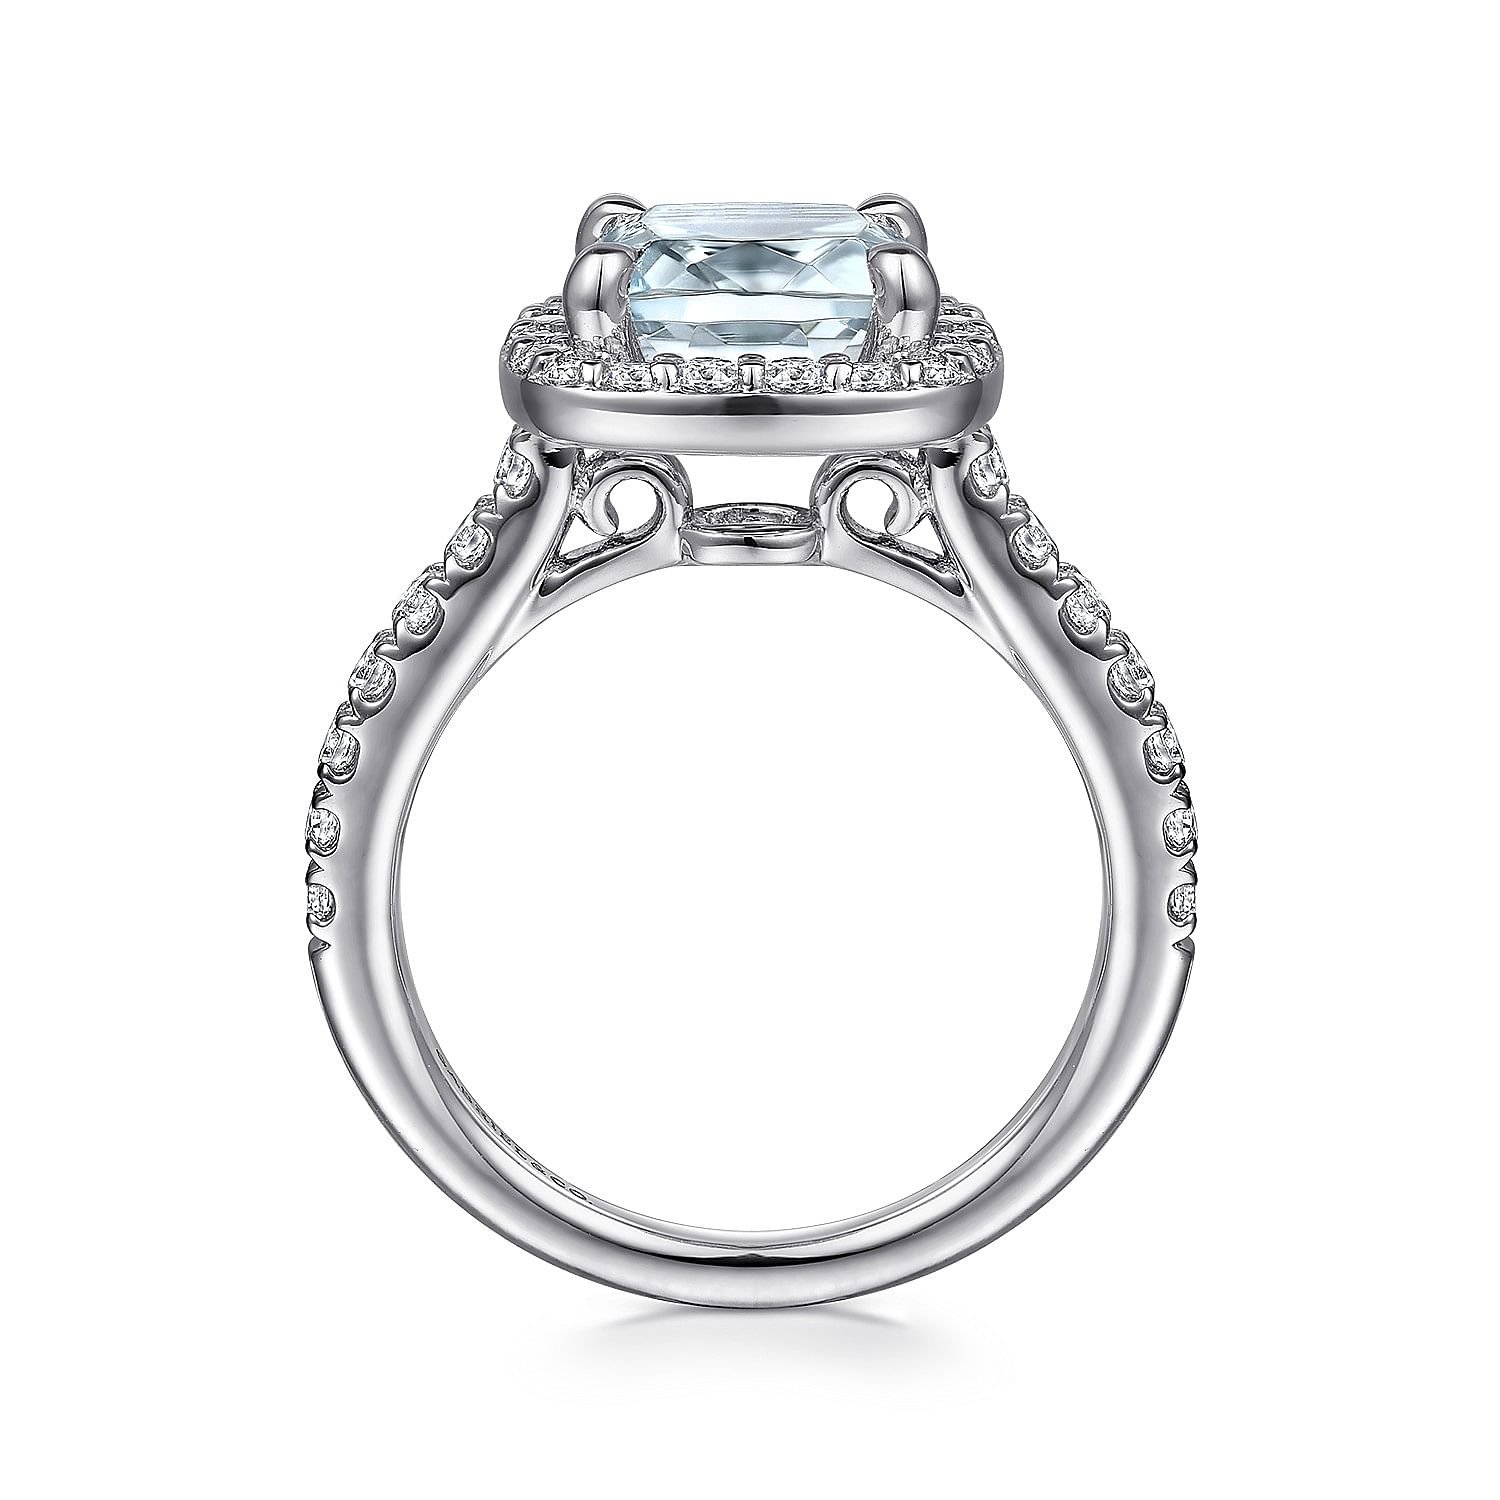 14K White Gold Cushion Halo Round Aquamarine and Diamond Engagement Ring